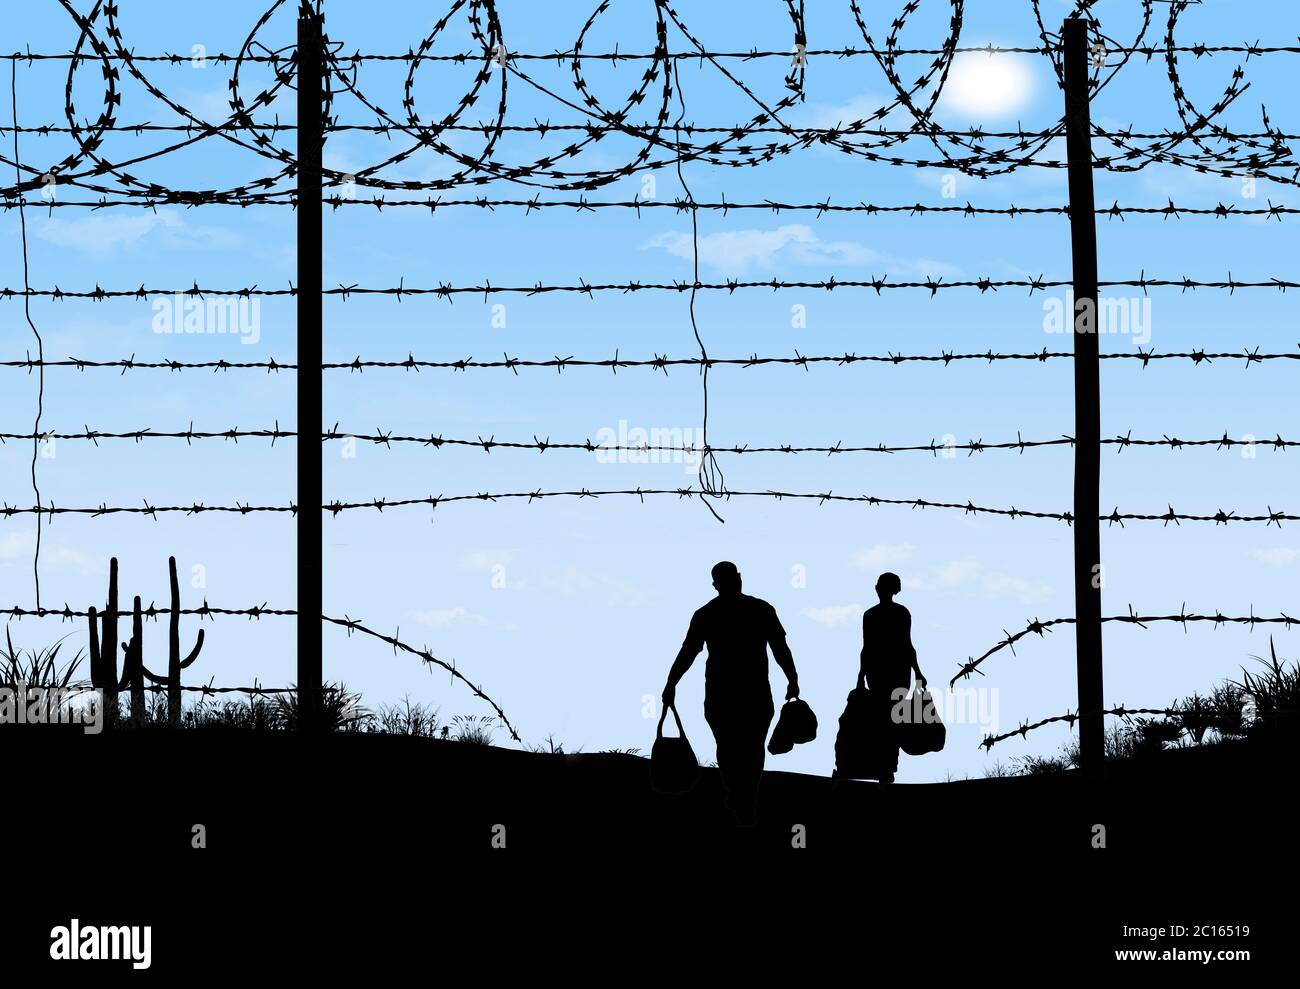 Un homme et une femme sont vus en silhouette après avoir enfreint une barrière frontalière à la frontière sud des États-Unis. Ils ont traversé un fil barbelé cassé f Banque D'Images